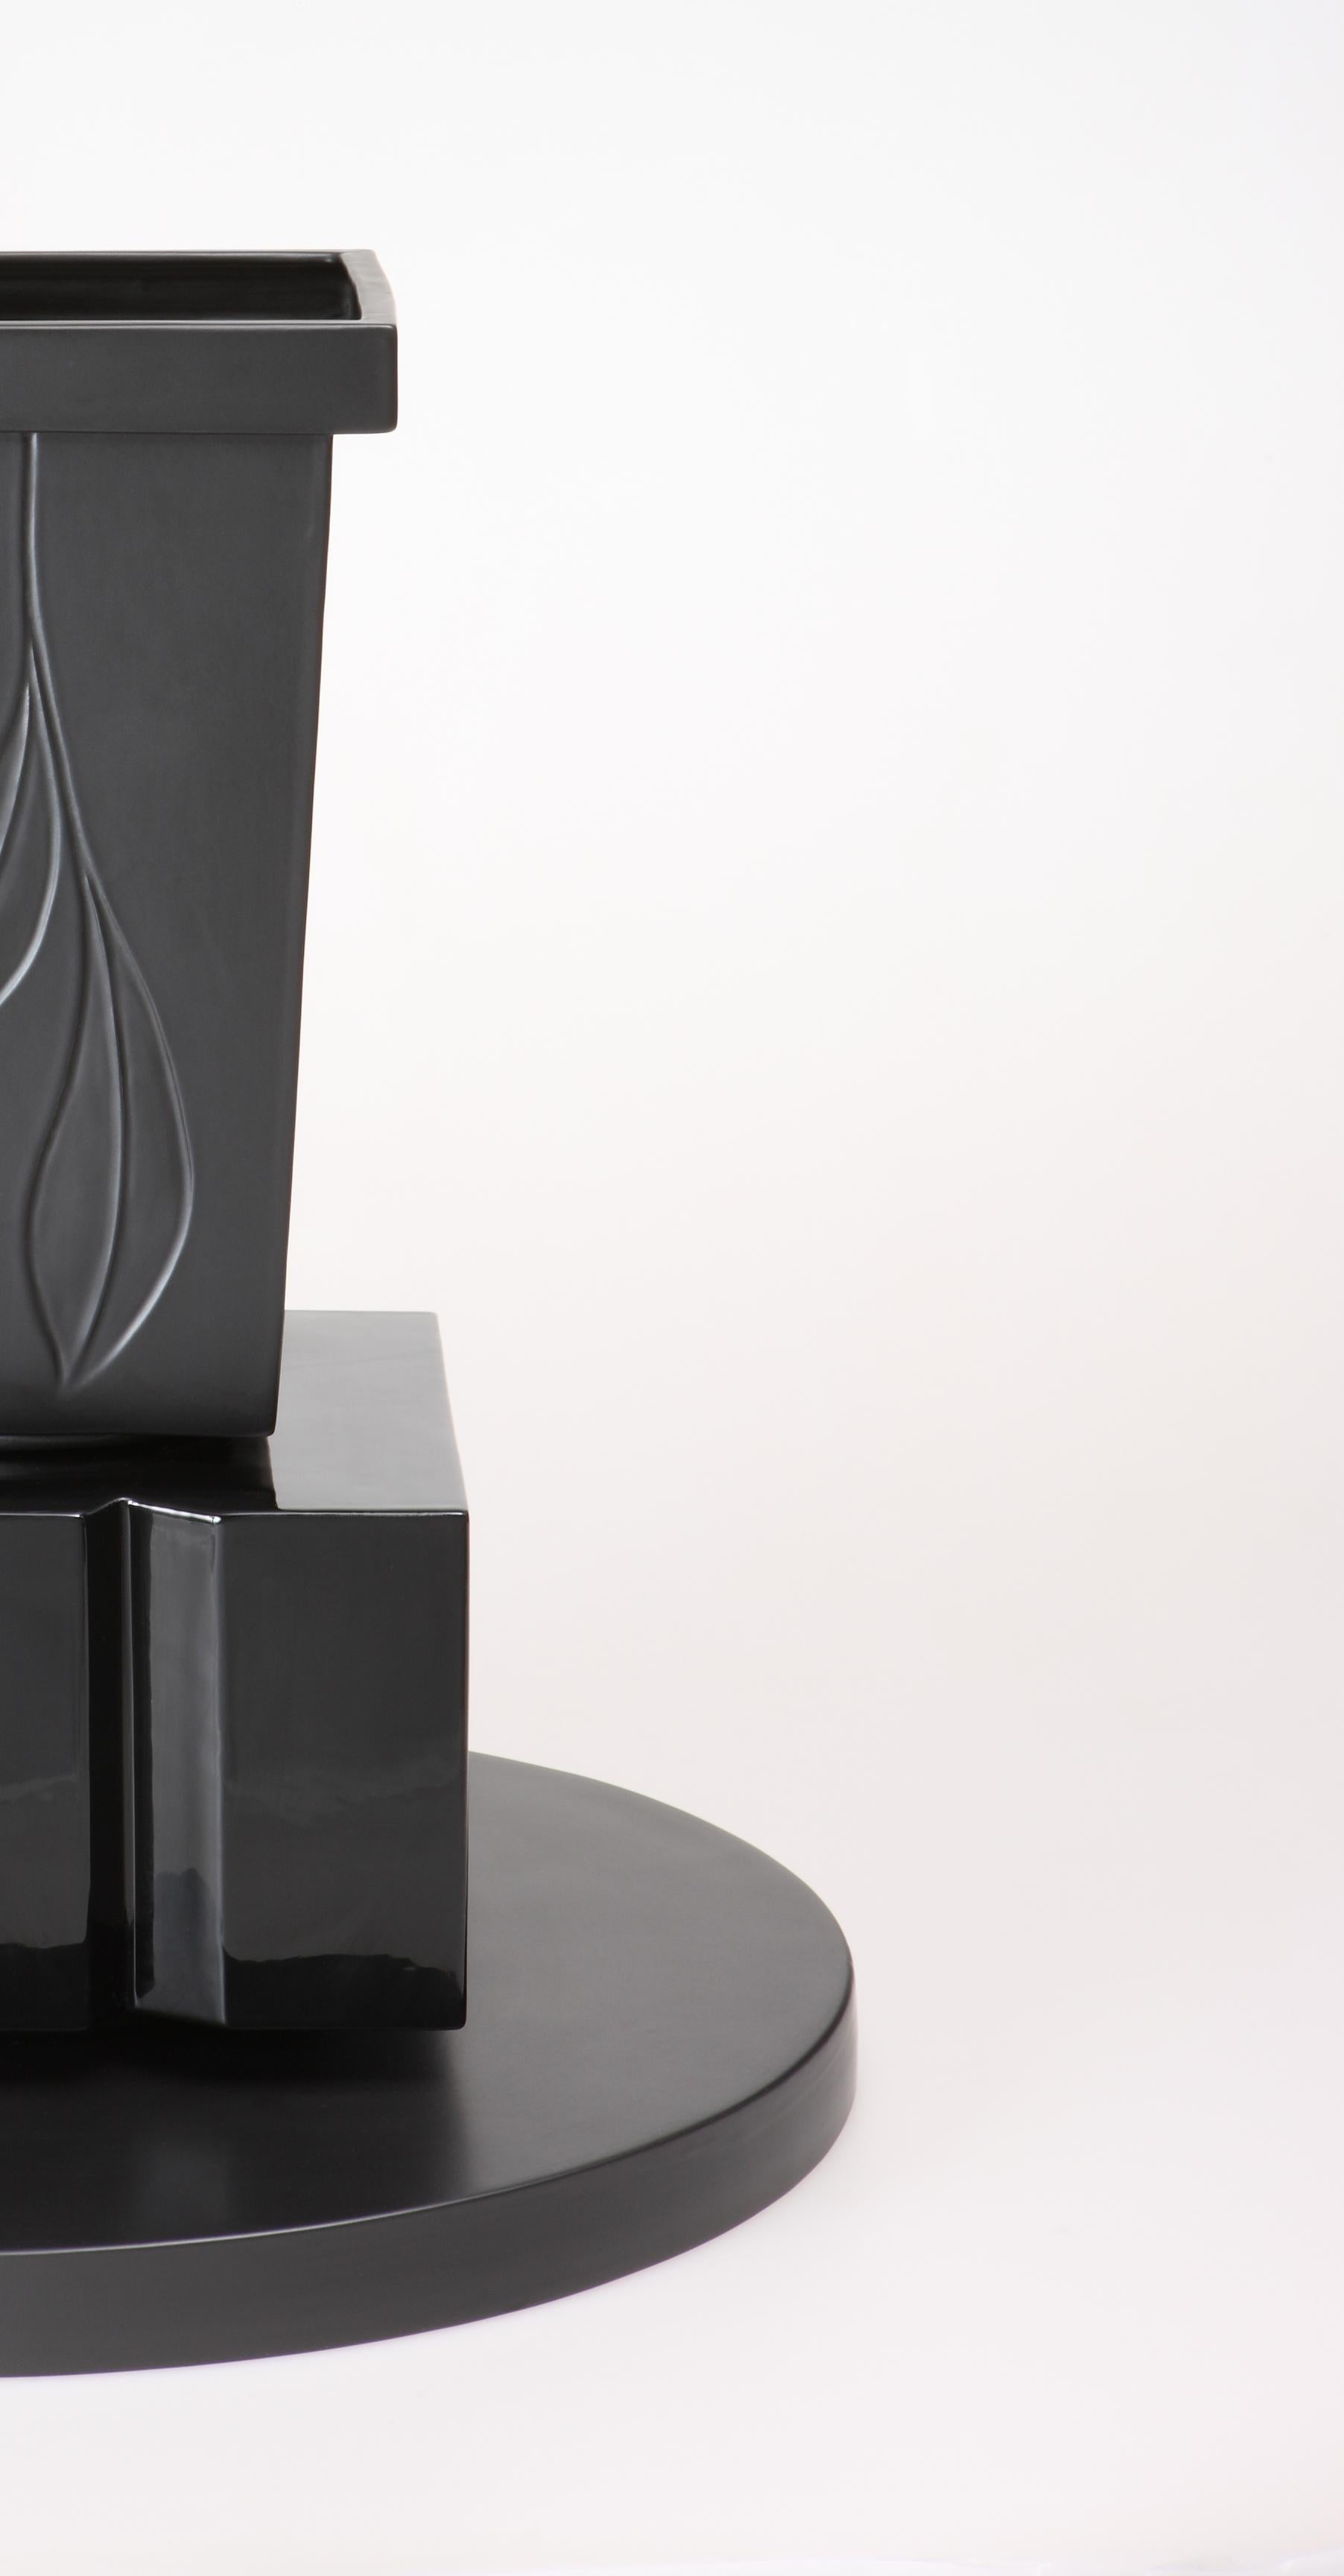 Vase en céramique Indu de la collection Black&Black conçue par Sergio Asti et produite par Superego Editions. Edition limitée de 50 pièces. Signés et numérotés.

Biographie
Les éditions Superego sont nées en 2006, exerçant une activité constante de